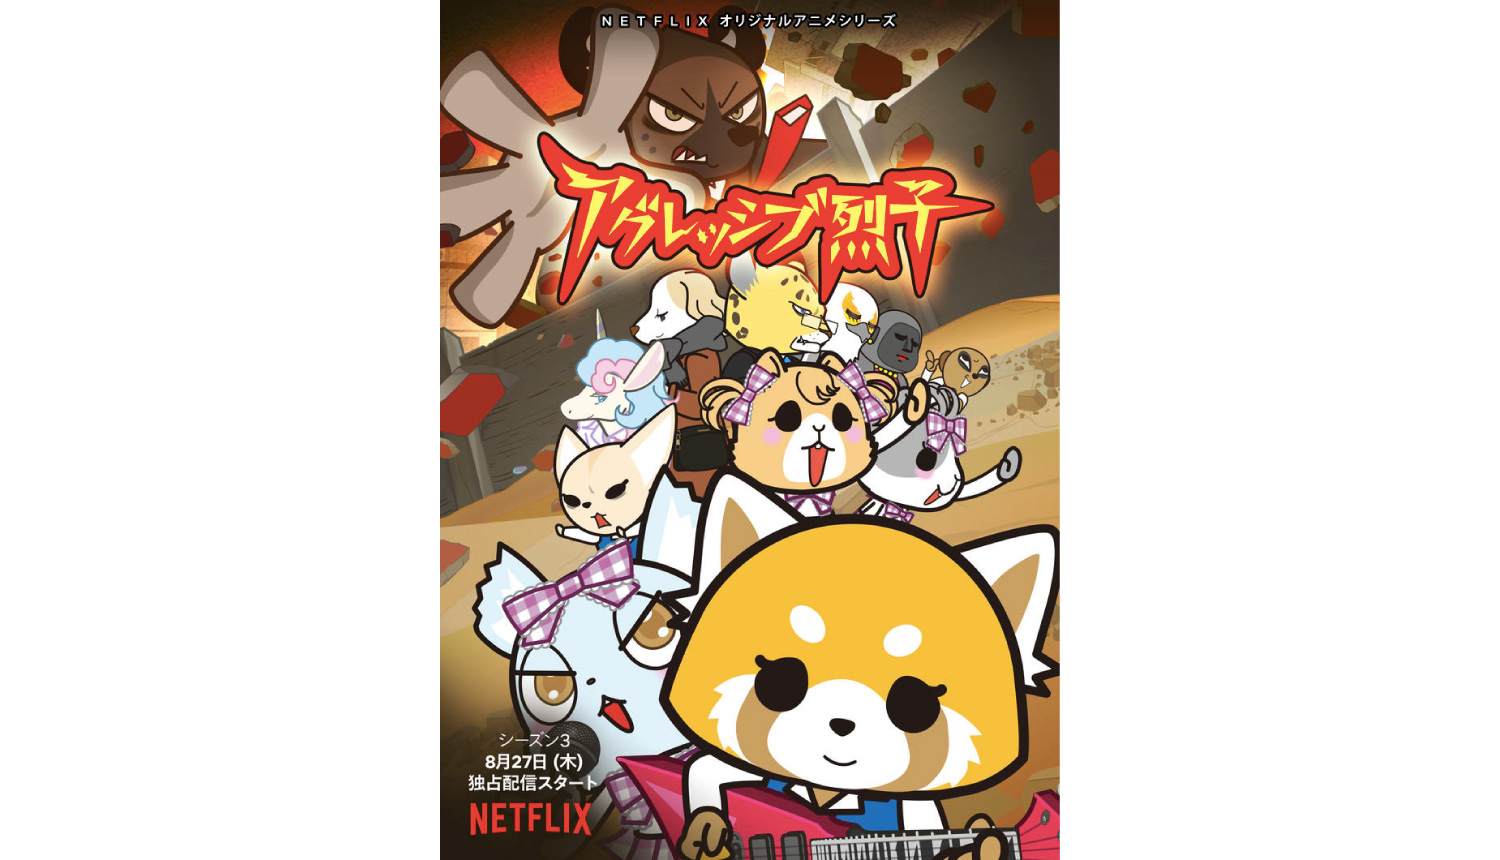 Netflix原创动画 Aggressive 烈子 第3 季宣传片解禁 Moshi Moshi Nippon もしもしにっぽん